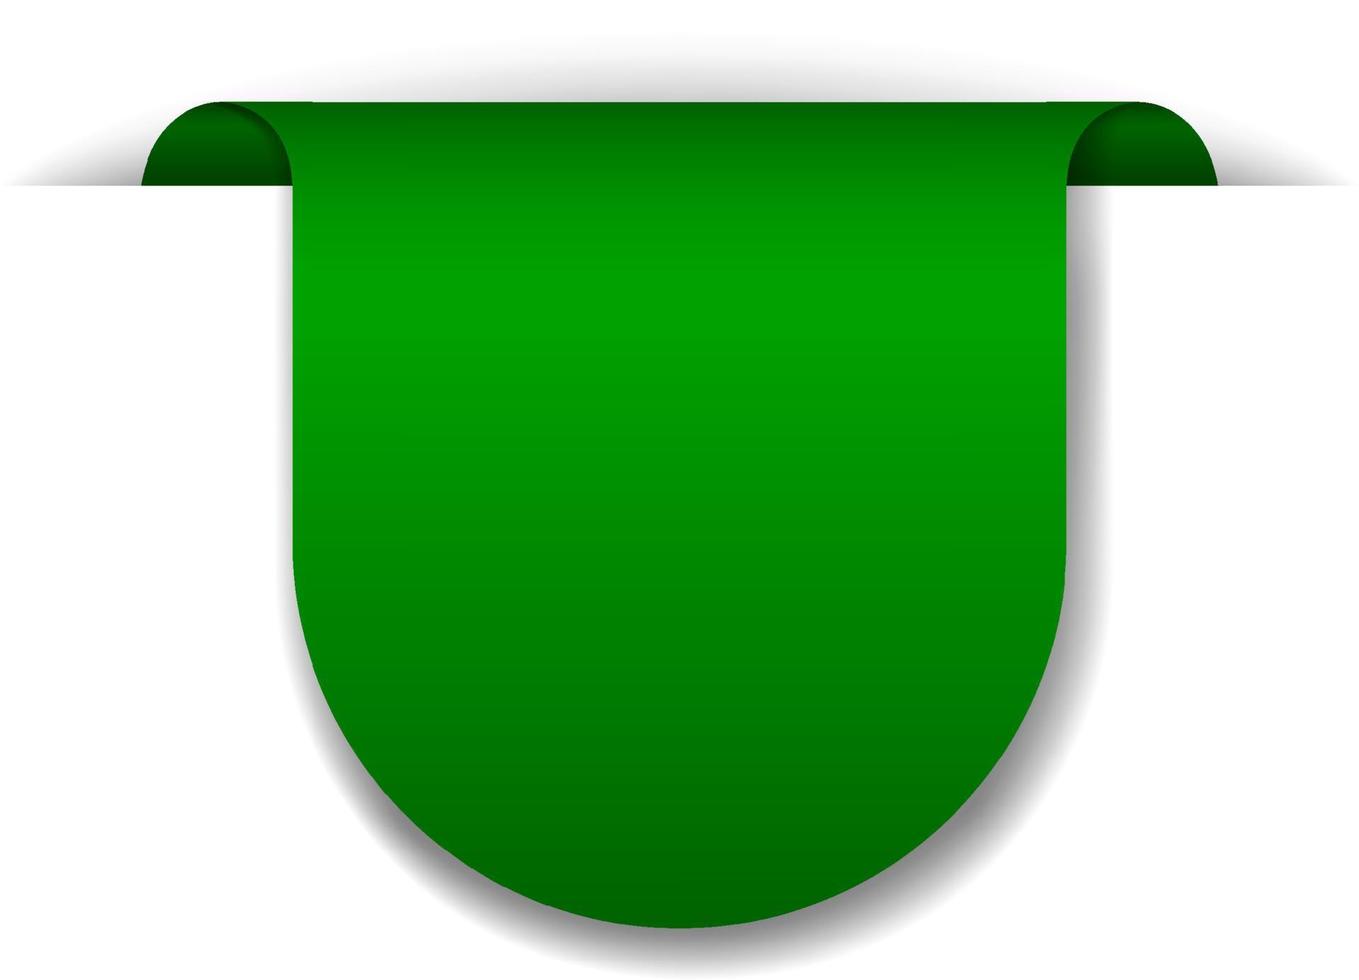 grünes Fahnendesign auf weißem Hintergrund vektor